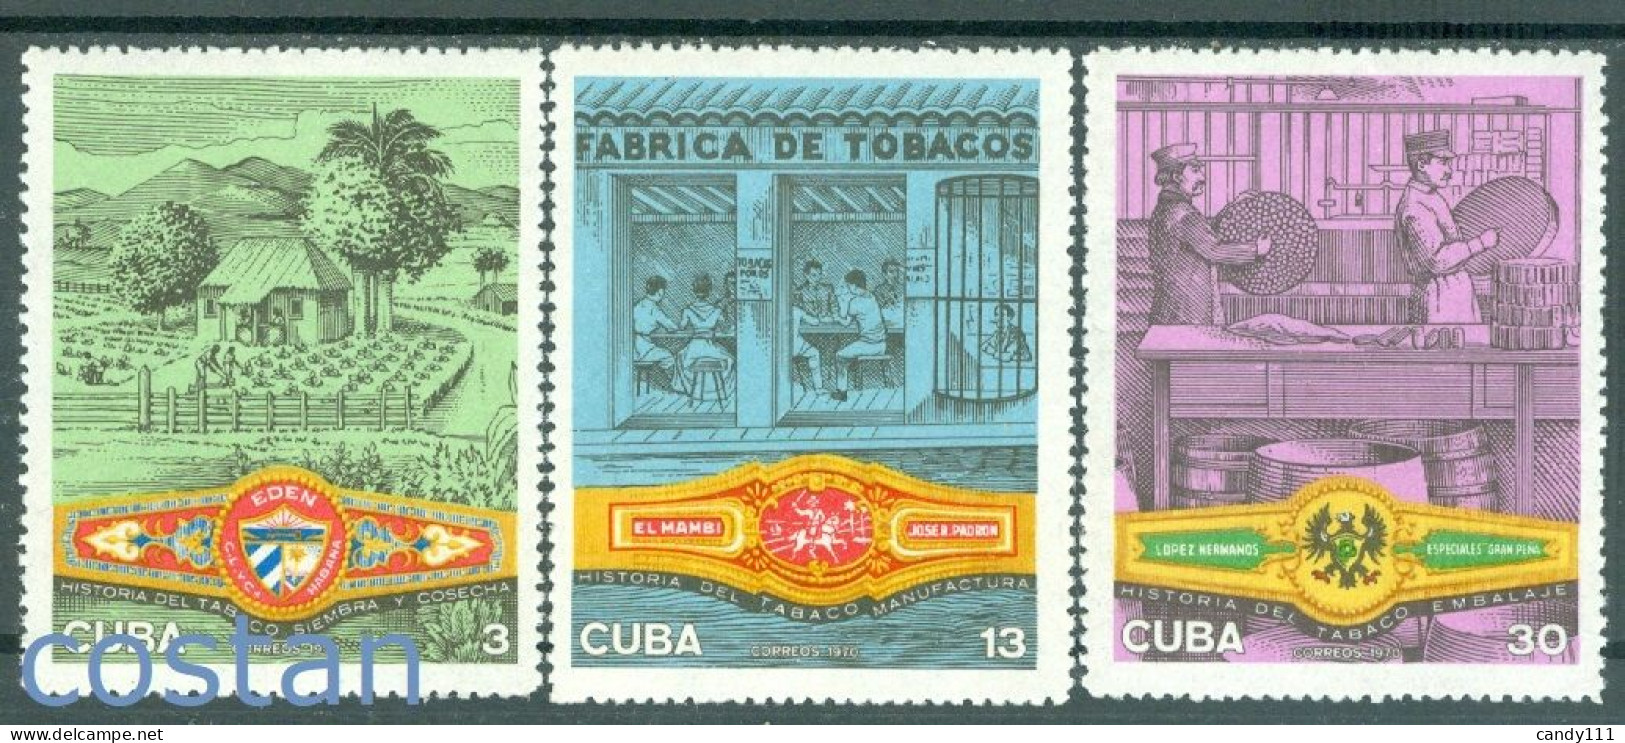 1970 Tobacco Industry,EDEN/El MAMBI/Gran PENA Cigar Band Labels,CUBA,1606,MNH - Tobacco